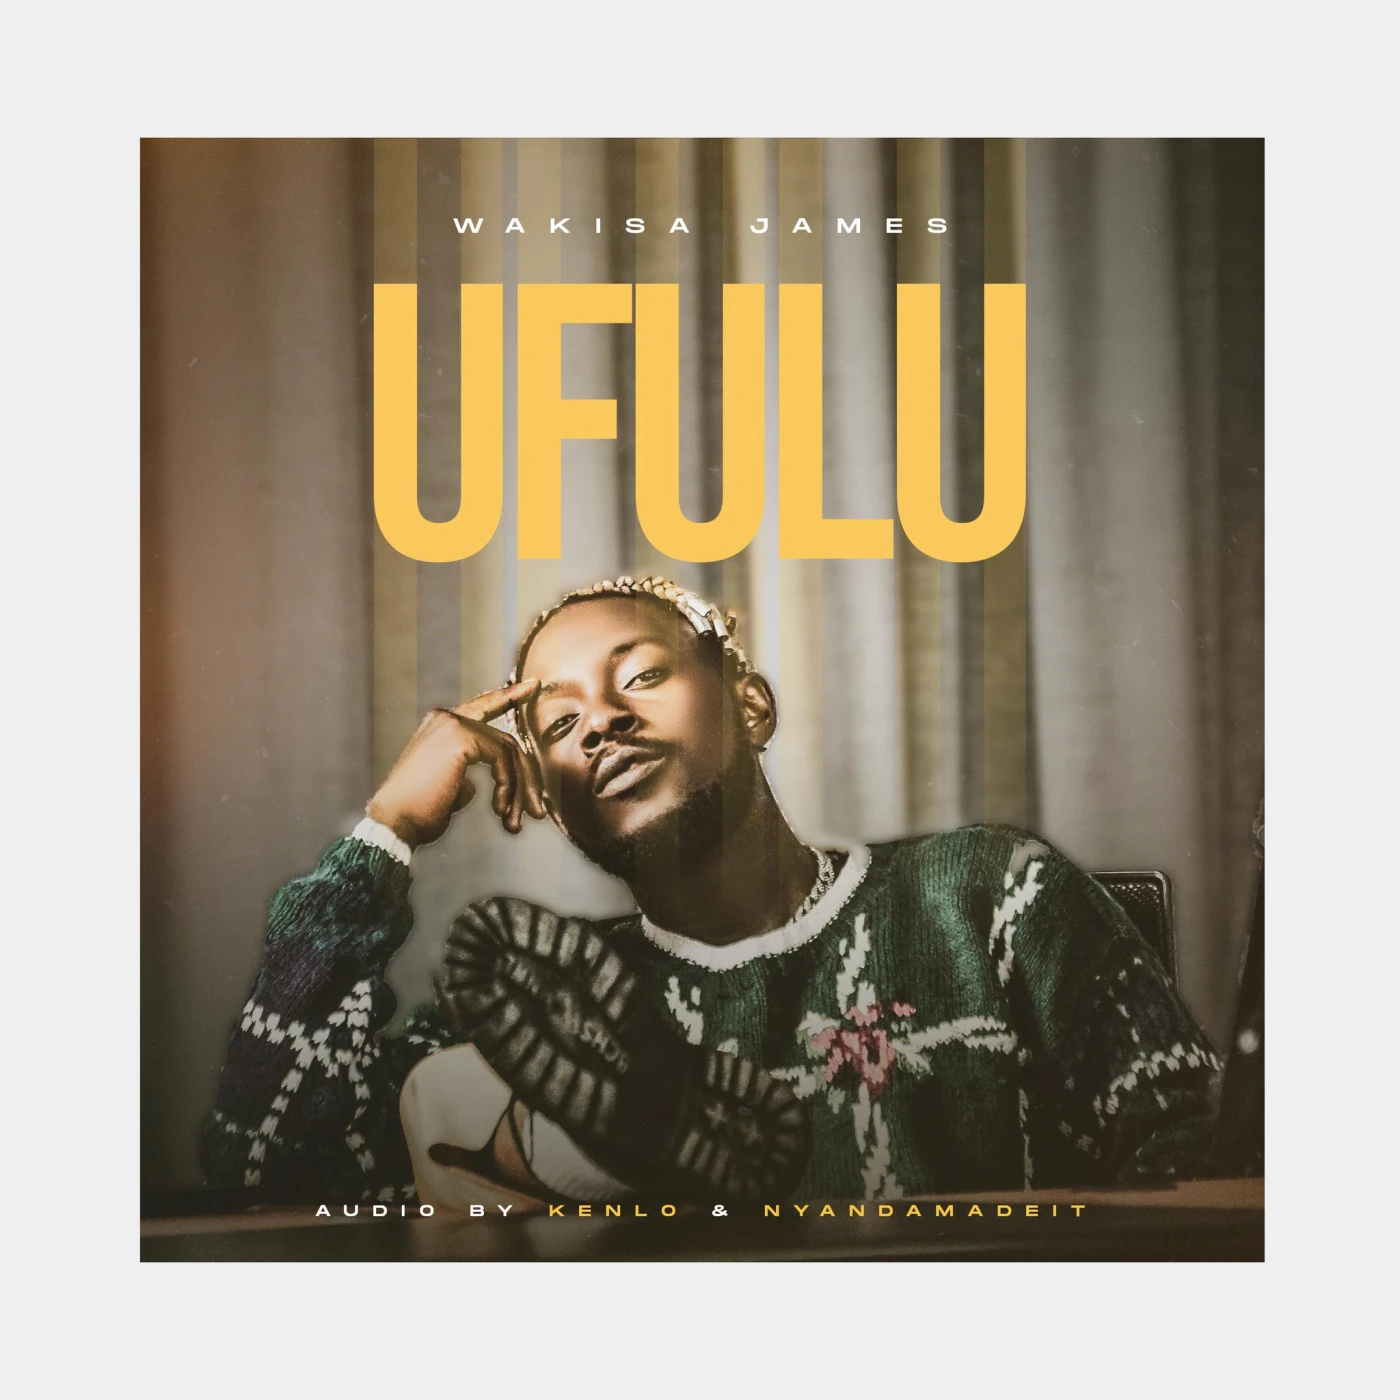 ufulu-wakisa-james-Just Malawi Music